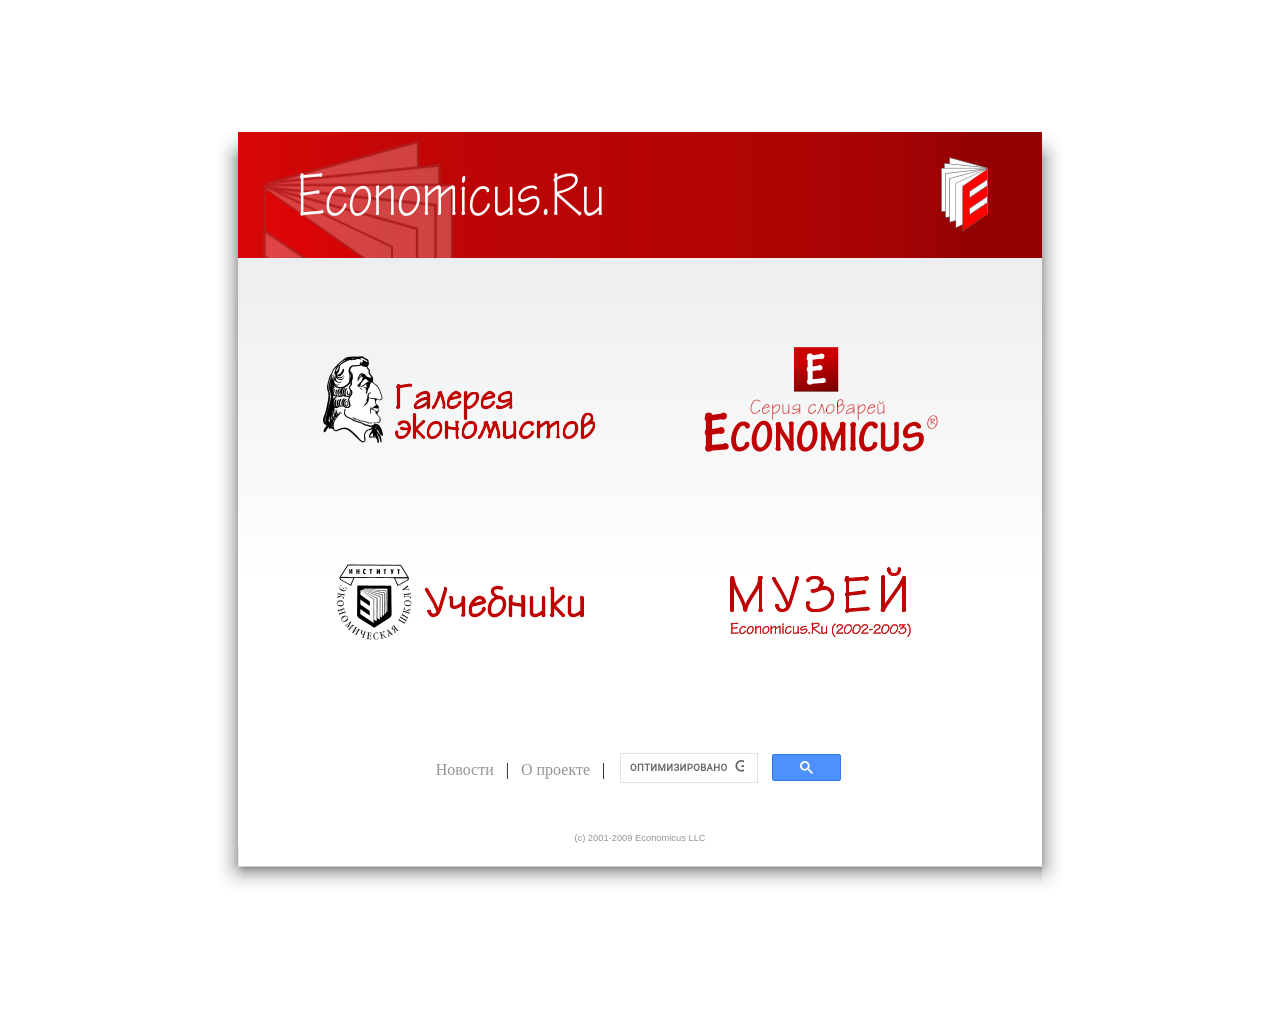 economicus.ru